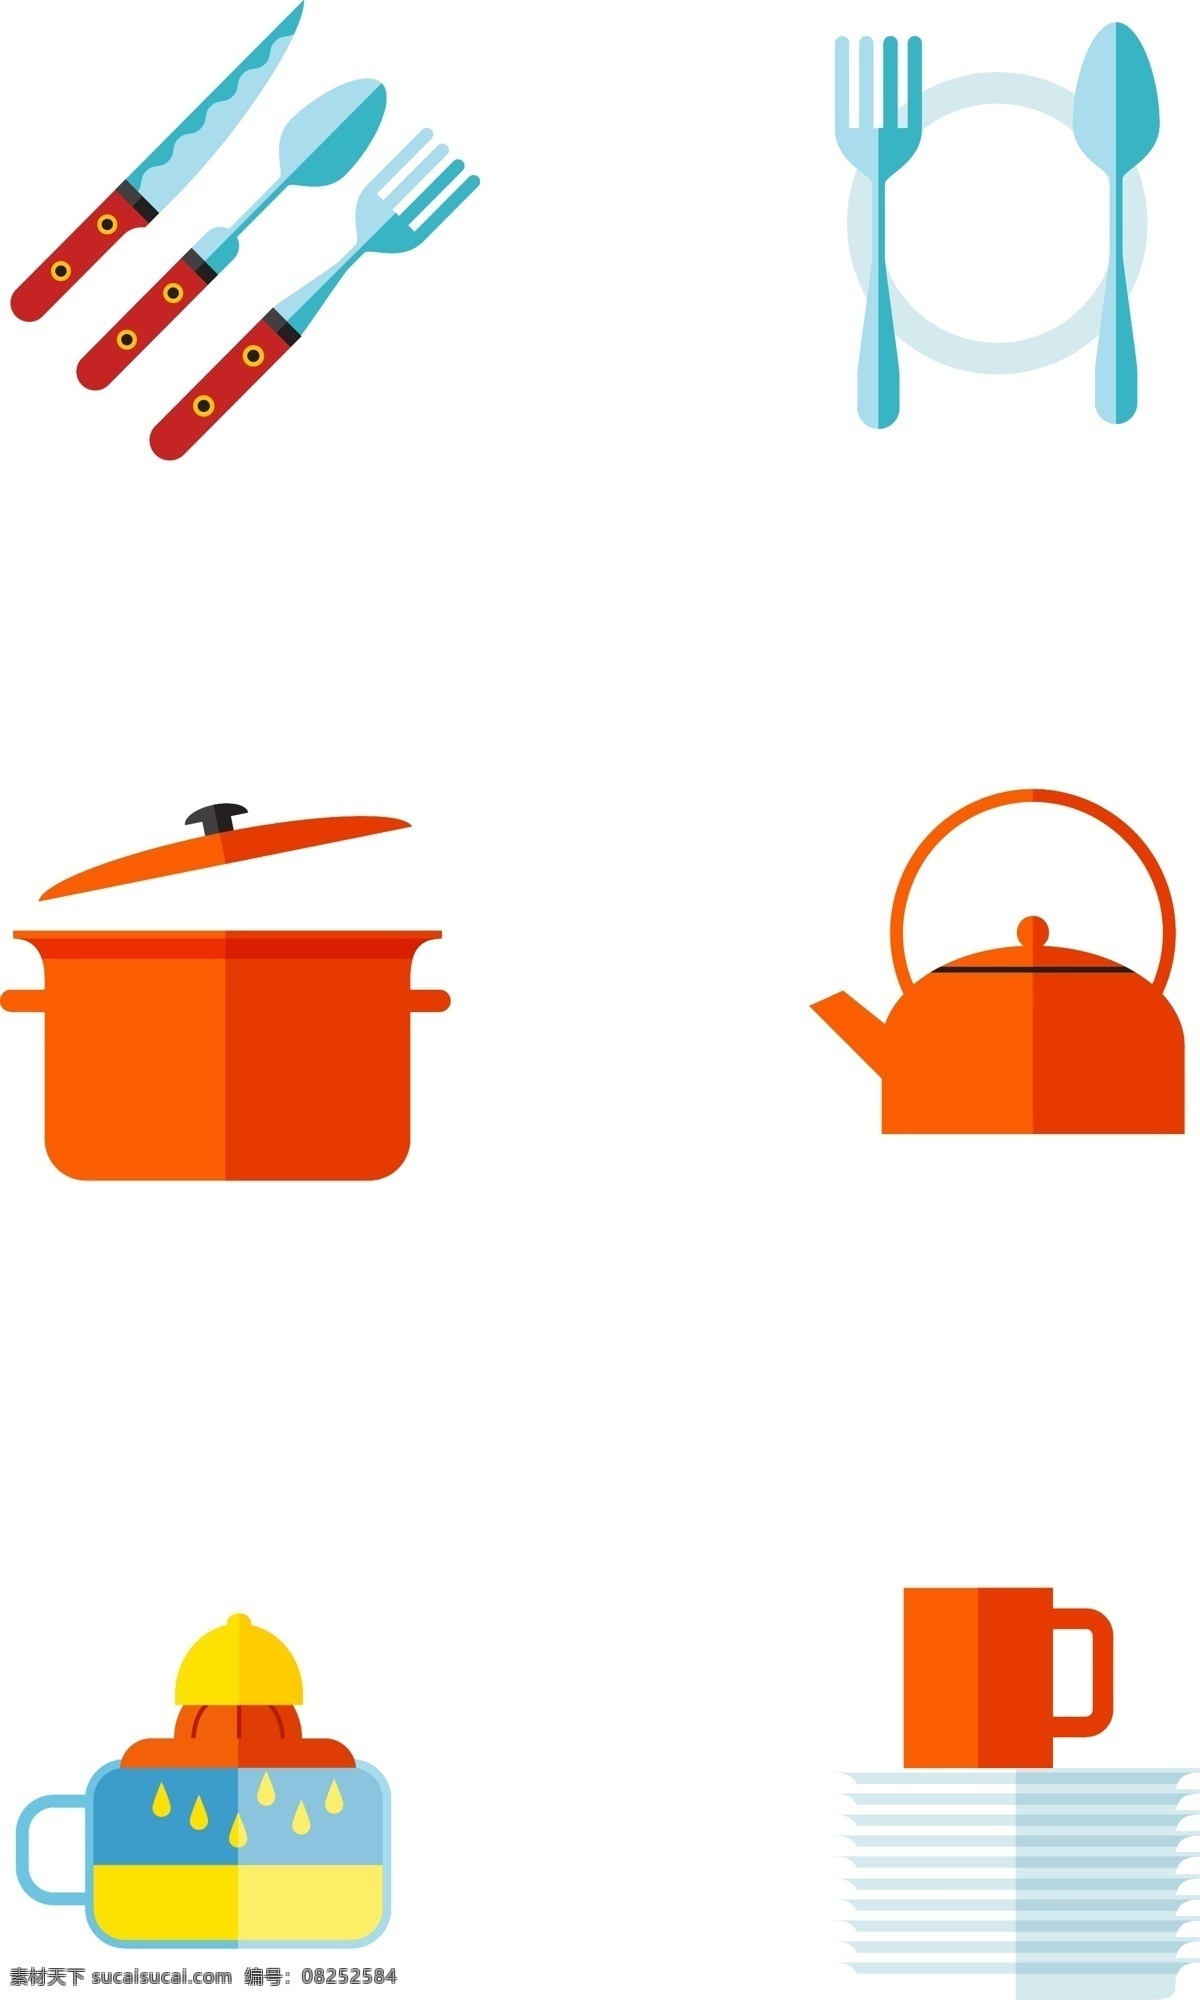 相关 厨房 厨具 插画 图标 扁平化 拟物 餐具 刀叉 锅 煲水壶 油瓶 碟子 红色系 有趣的 可爱的